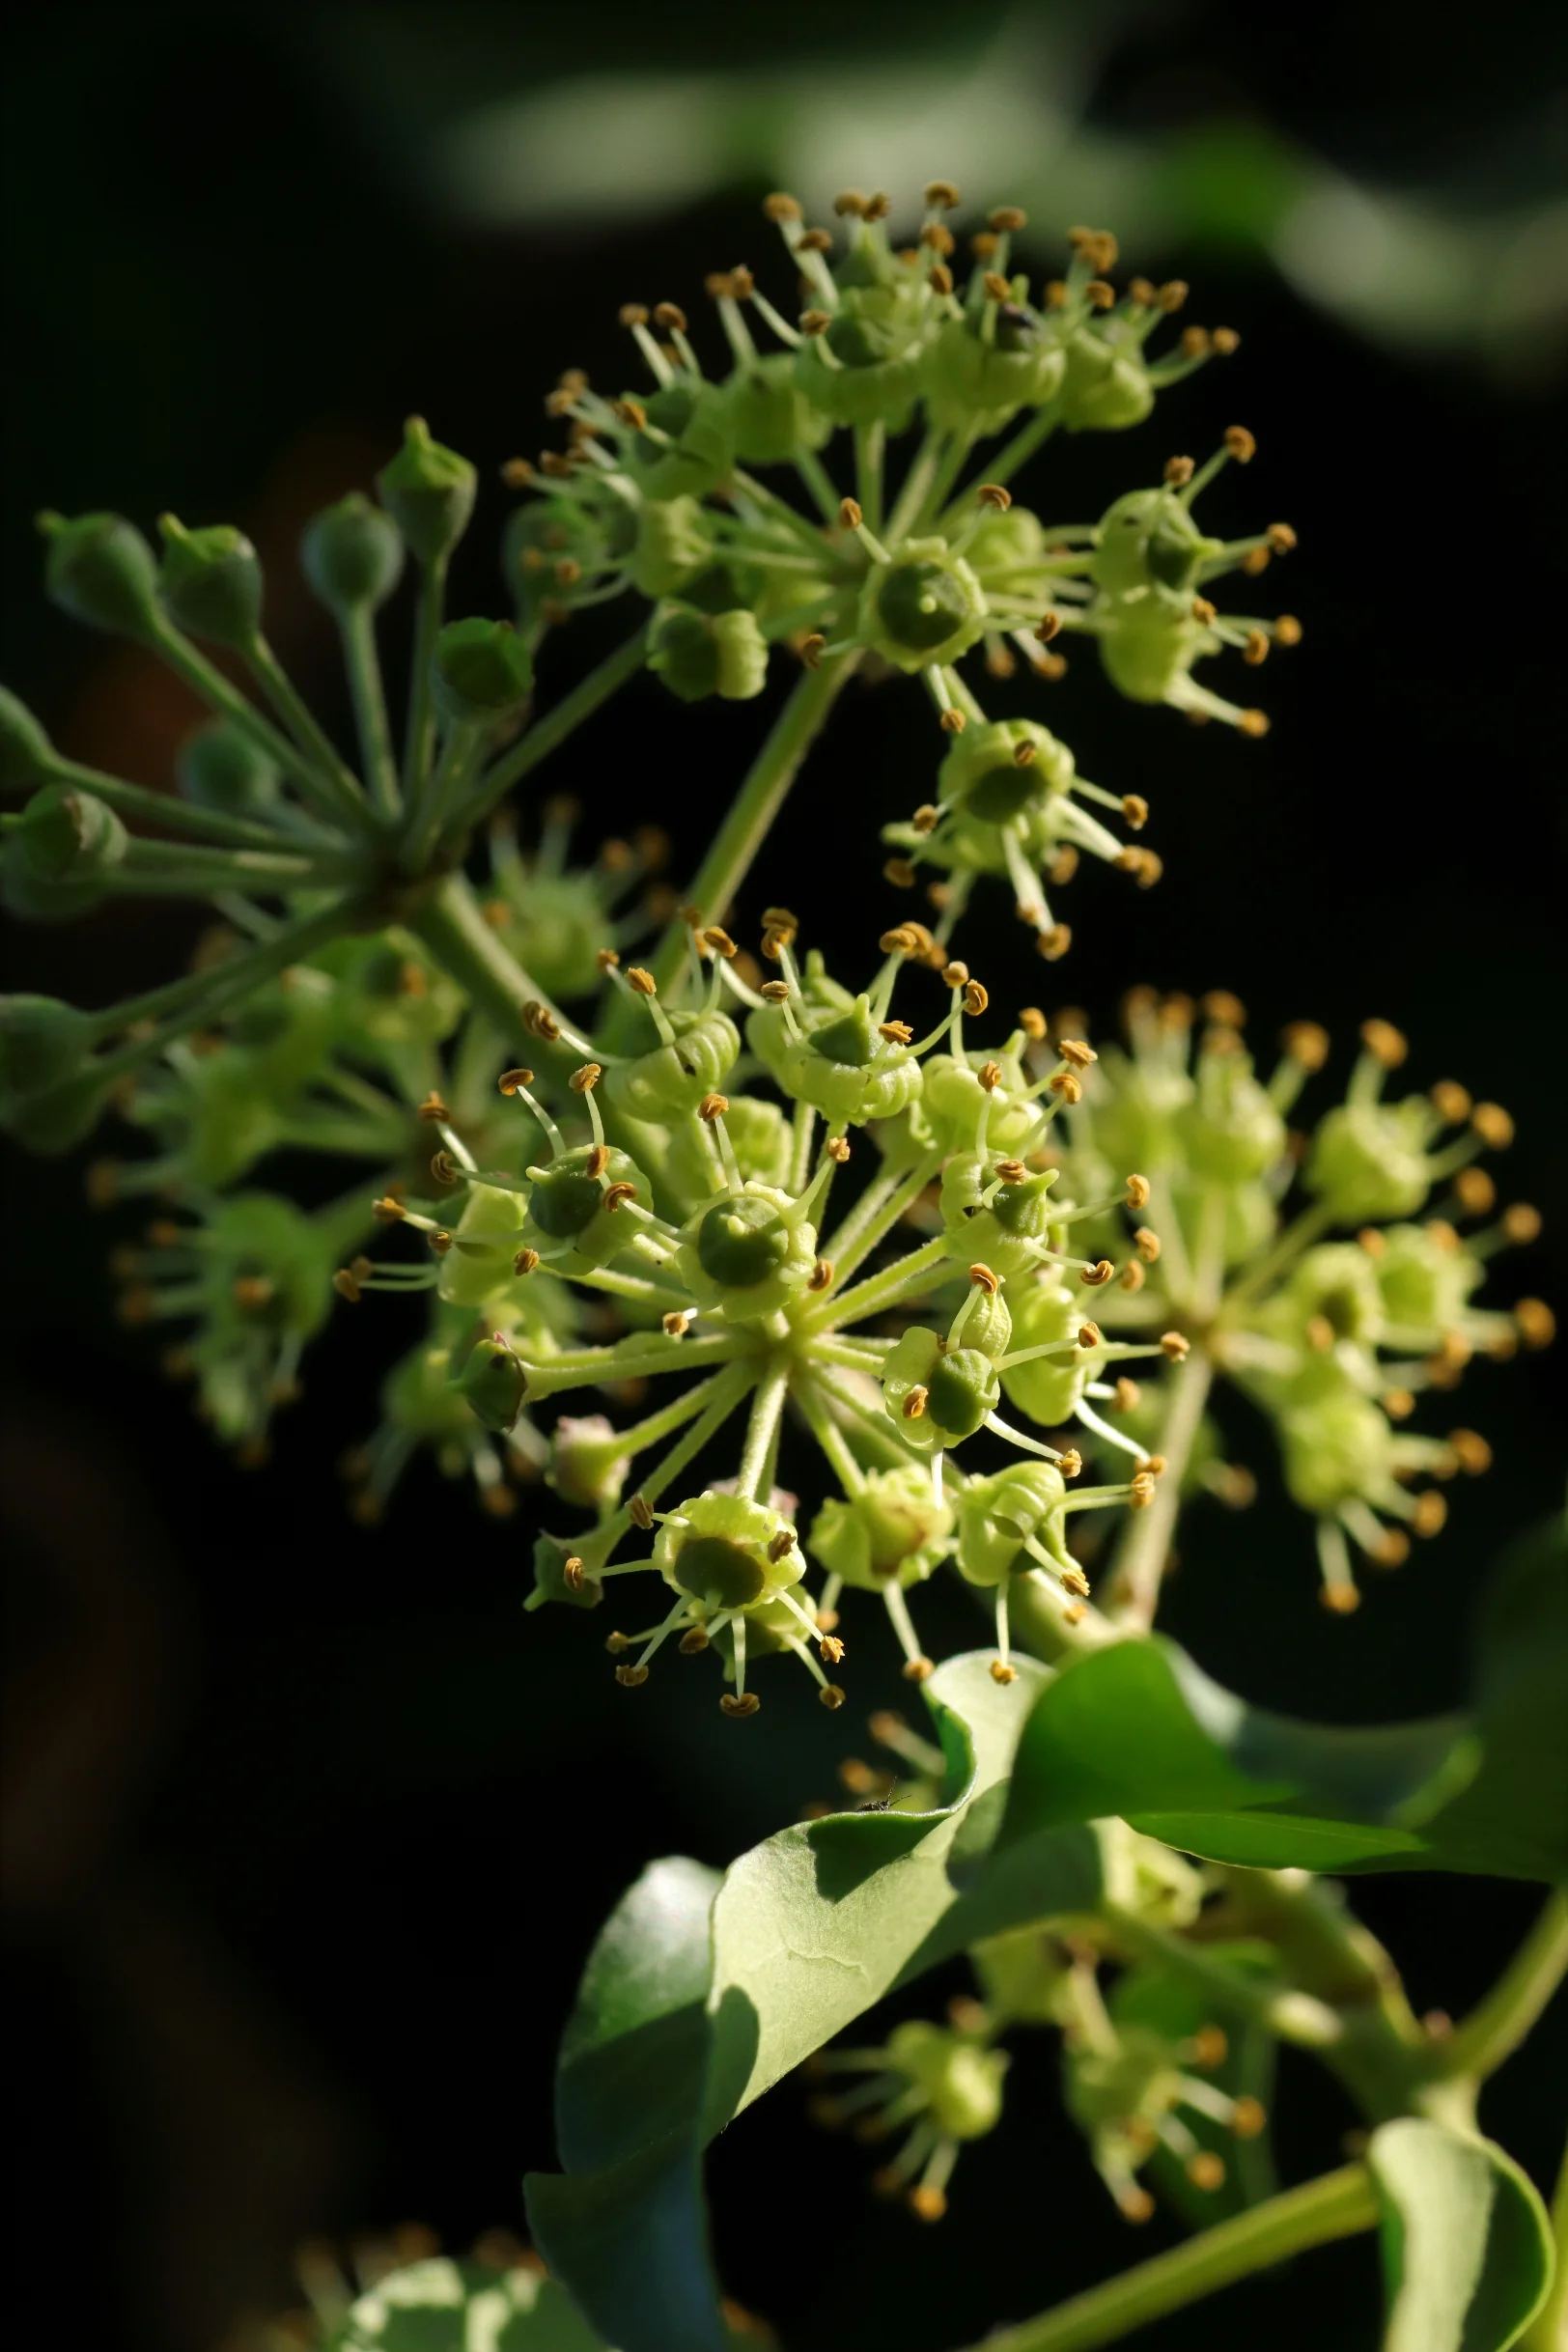 Die grün gefärbten Blüten des Efeu in der Mitte des Bildes. in einer Halbkugel angeordnet. Die Blüten besitzen fünf Blütenblätter und haben bis zu vier Blütenstempel. Der Hintergrund ist schwarz gefärbt.